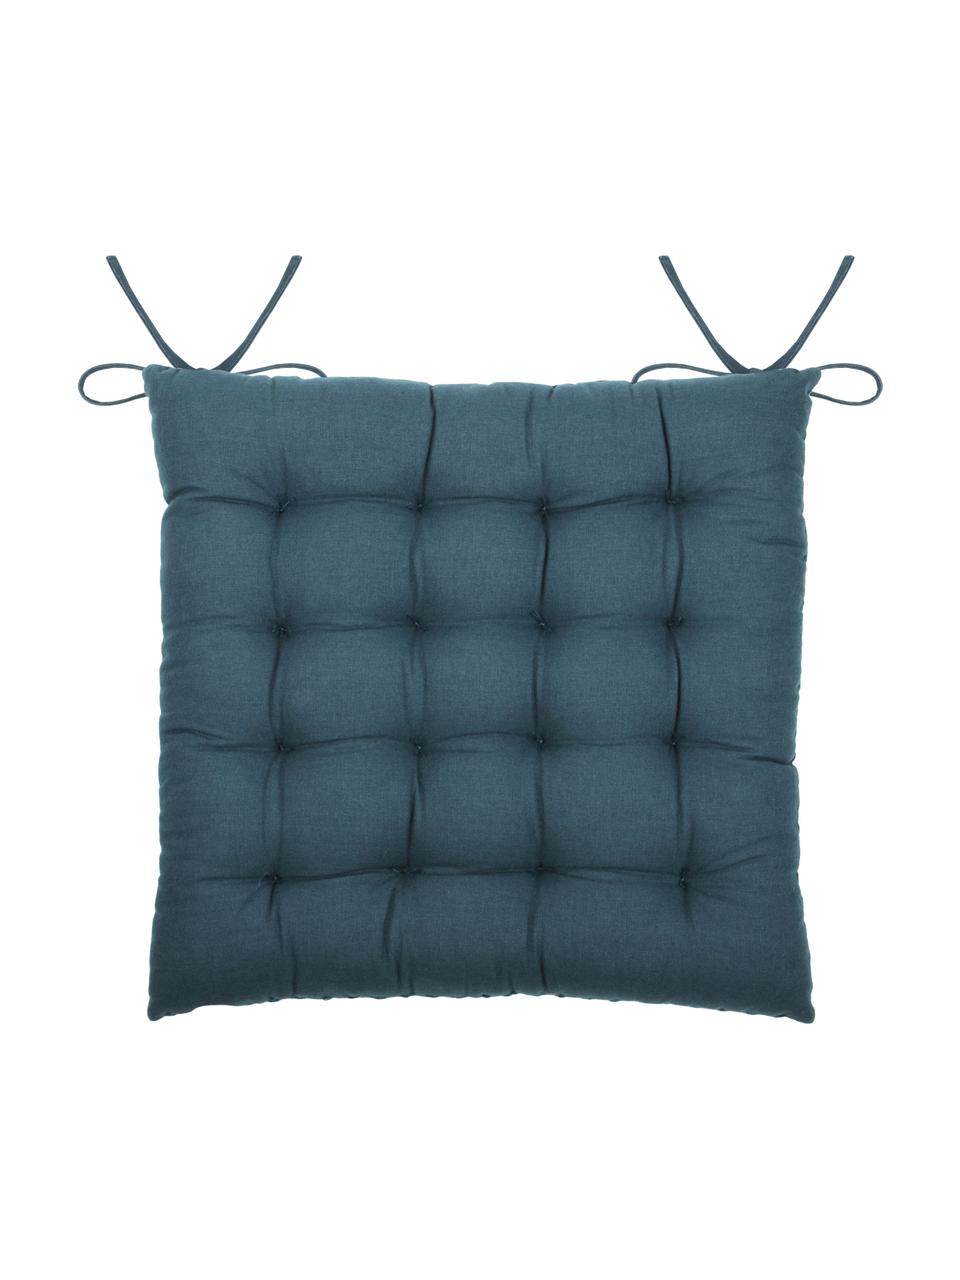 Poduszka na siedzisko z piki Gopher, Niebieski petrol, S 40 x D 40 cm